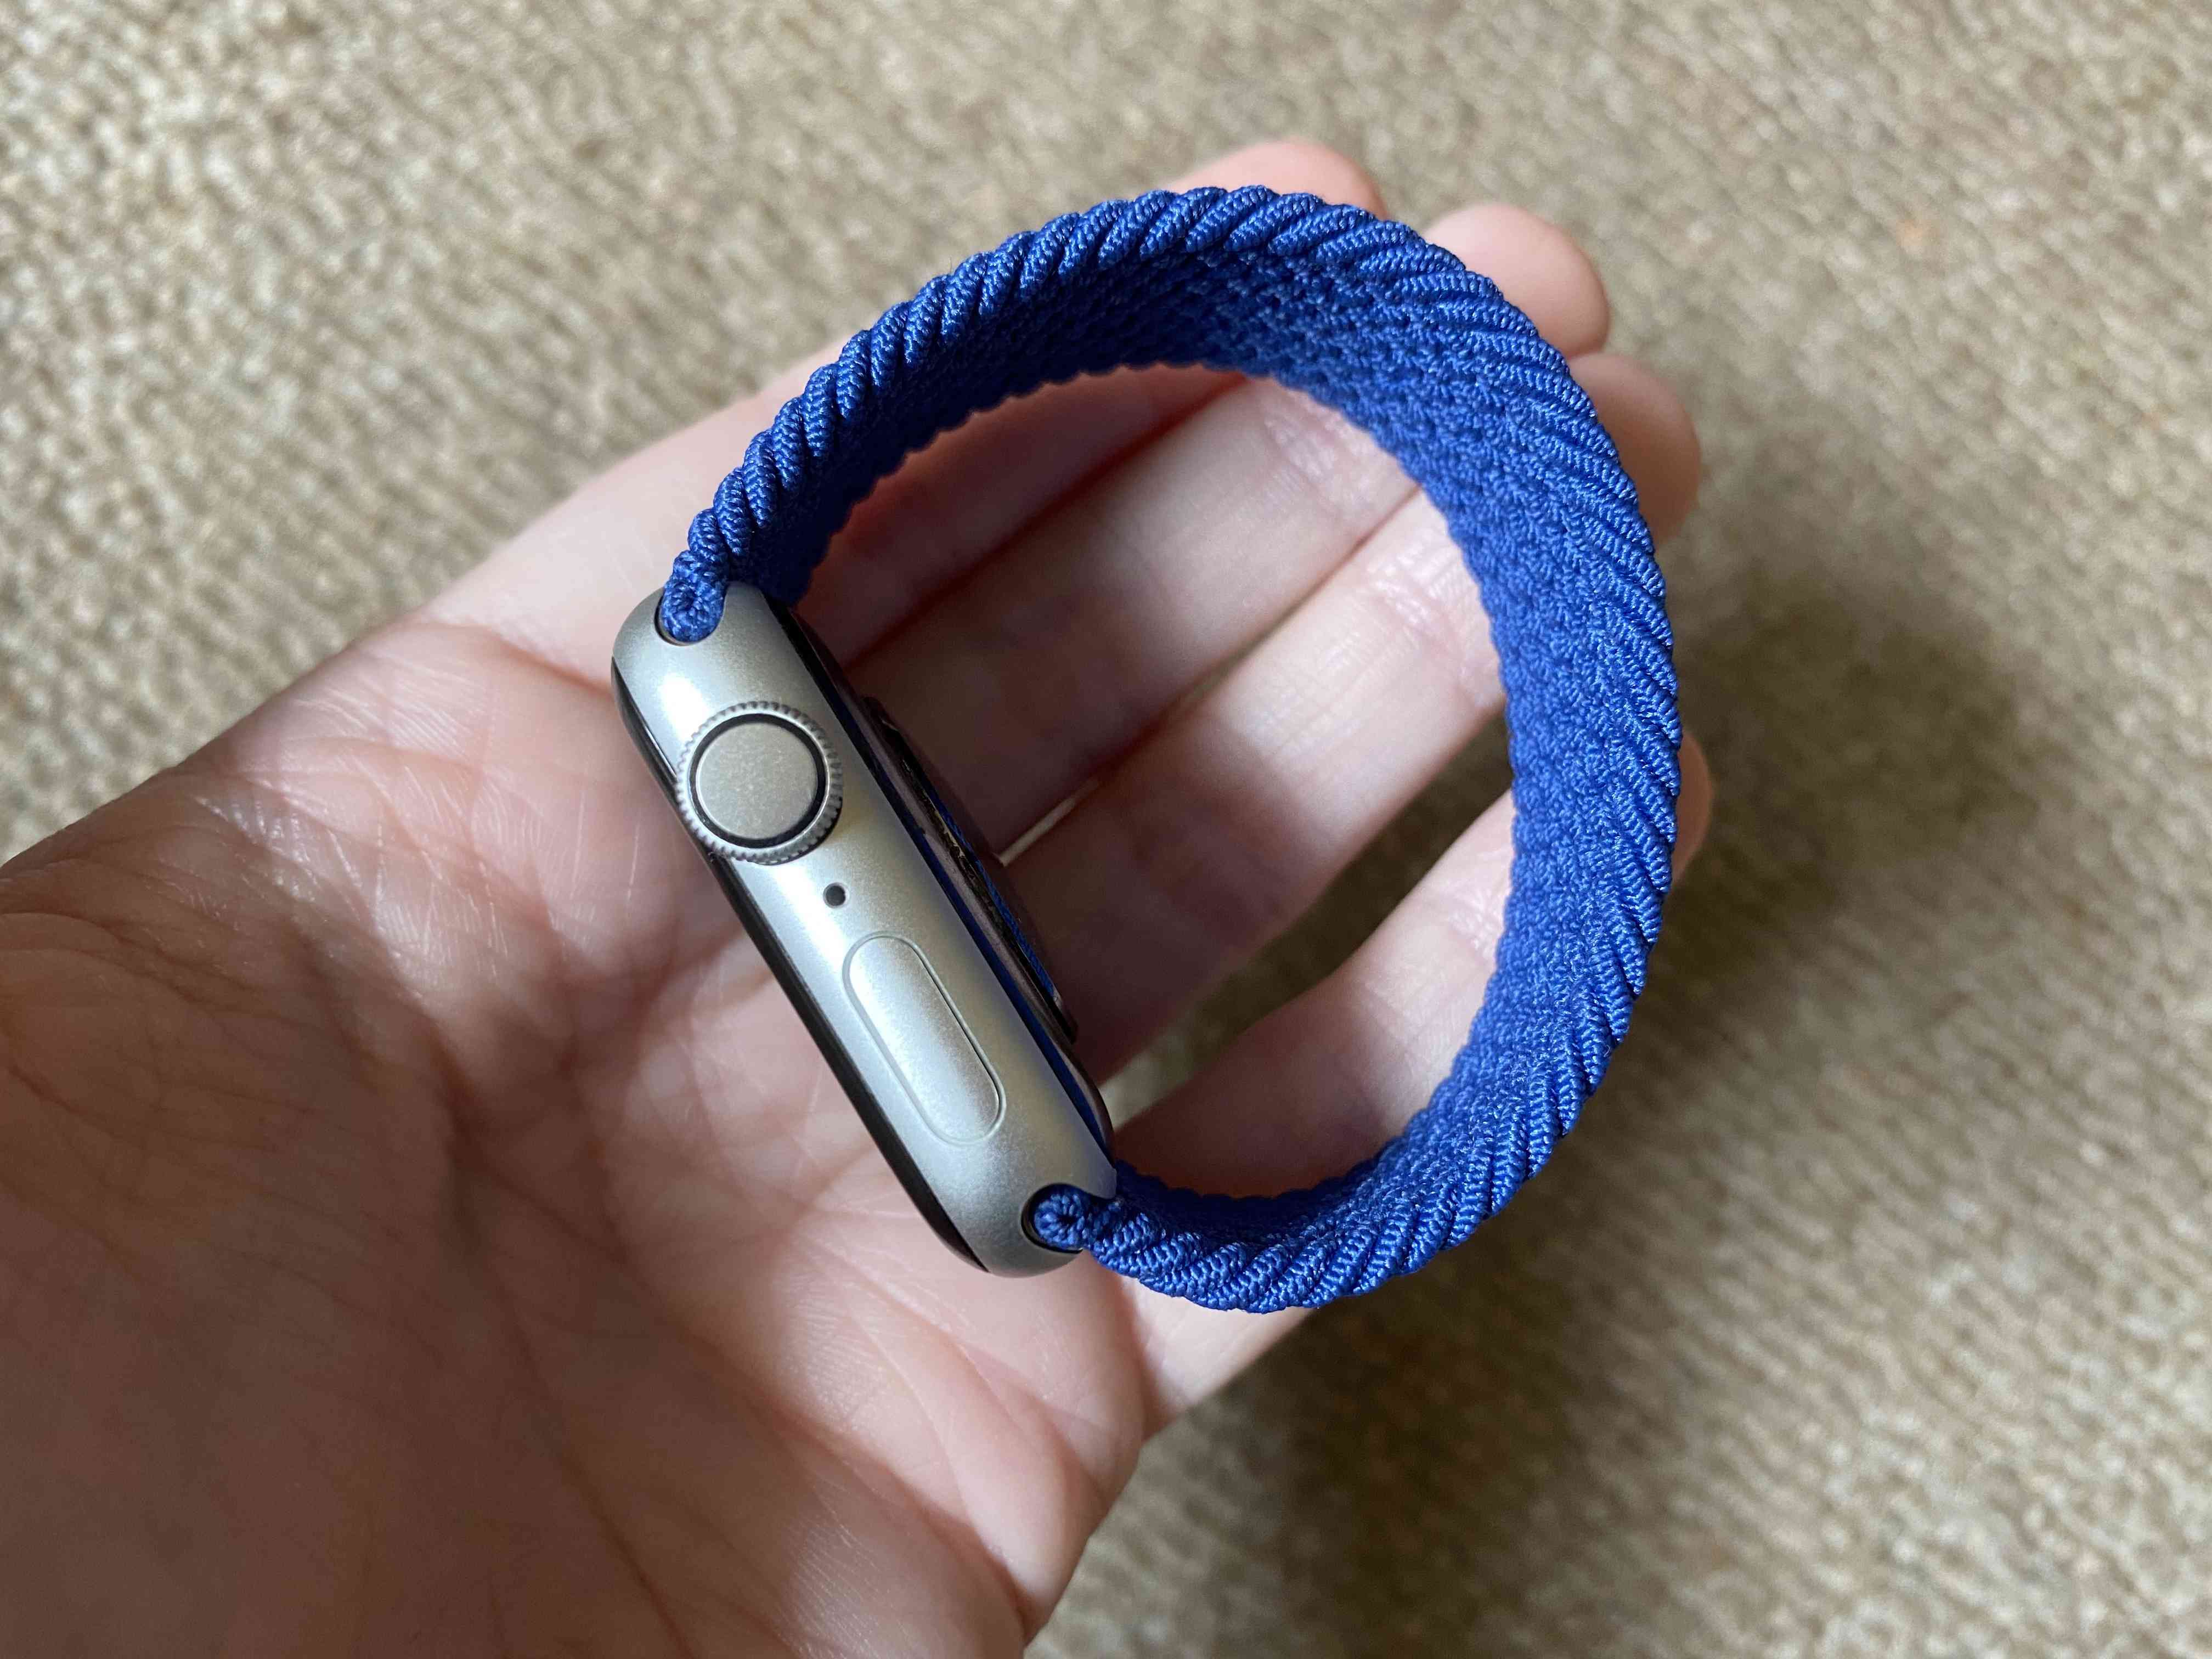 Boční pohled na hodinky Apple s opleteným páskem pro smyčku v modré barvě